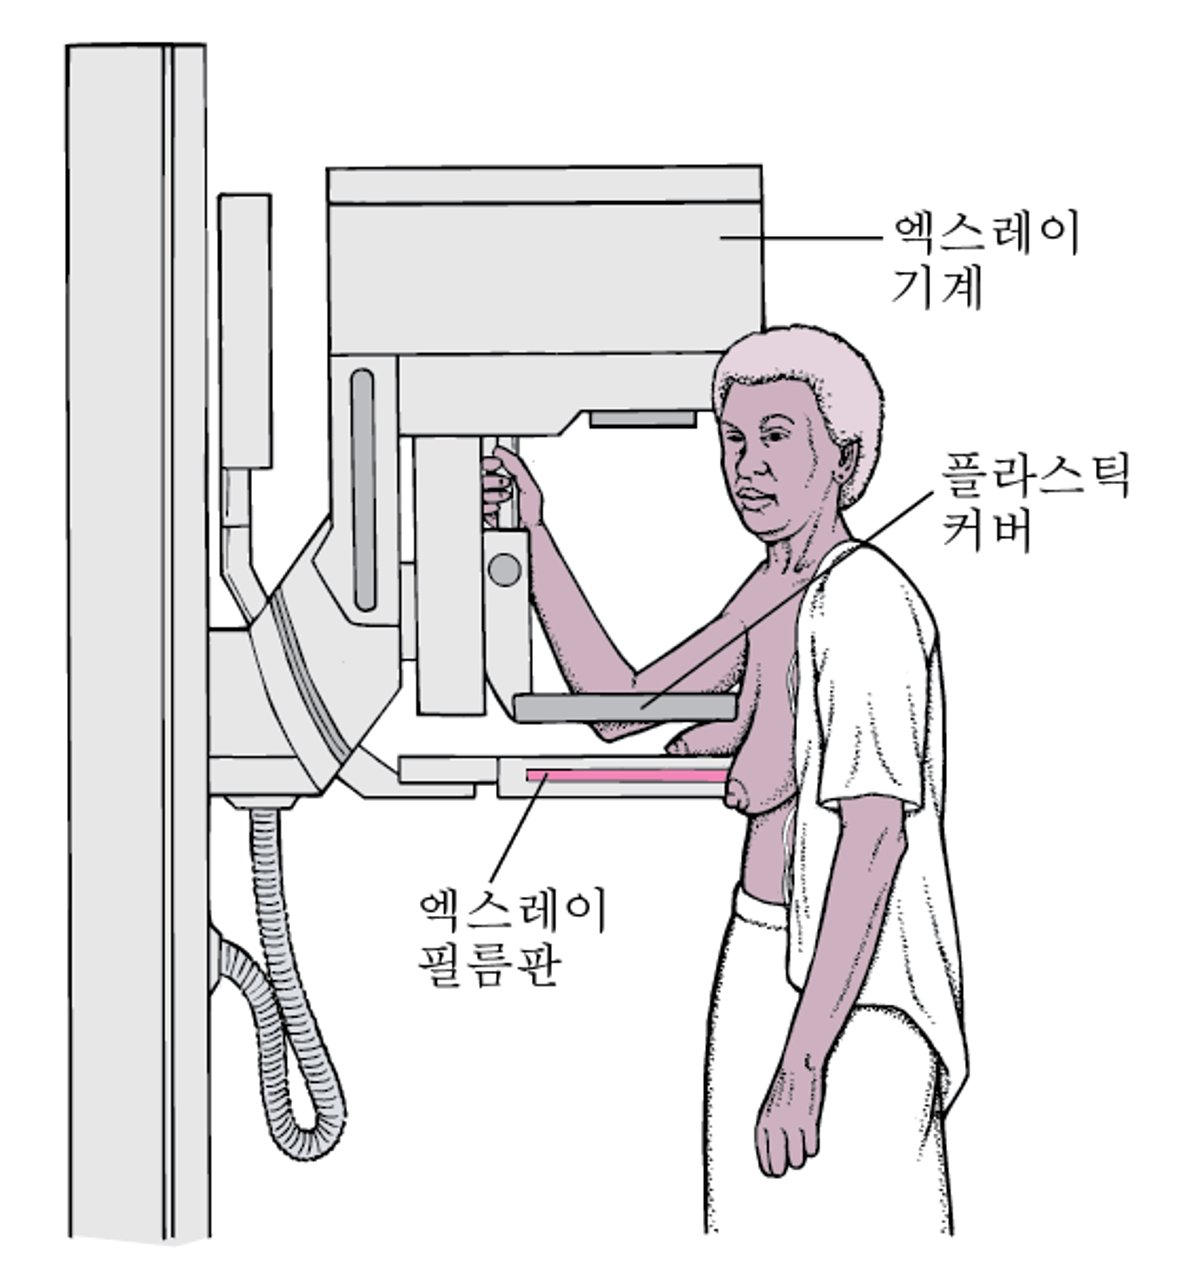 유방조영술: 유방암 선별검사